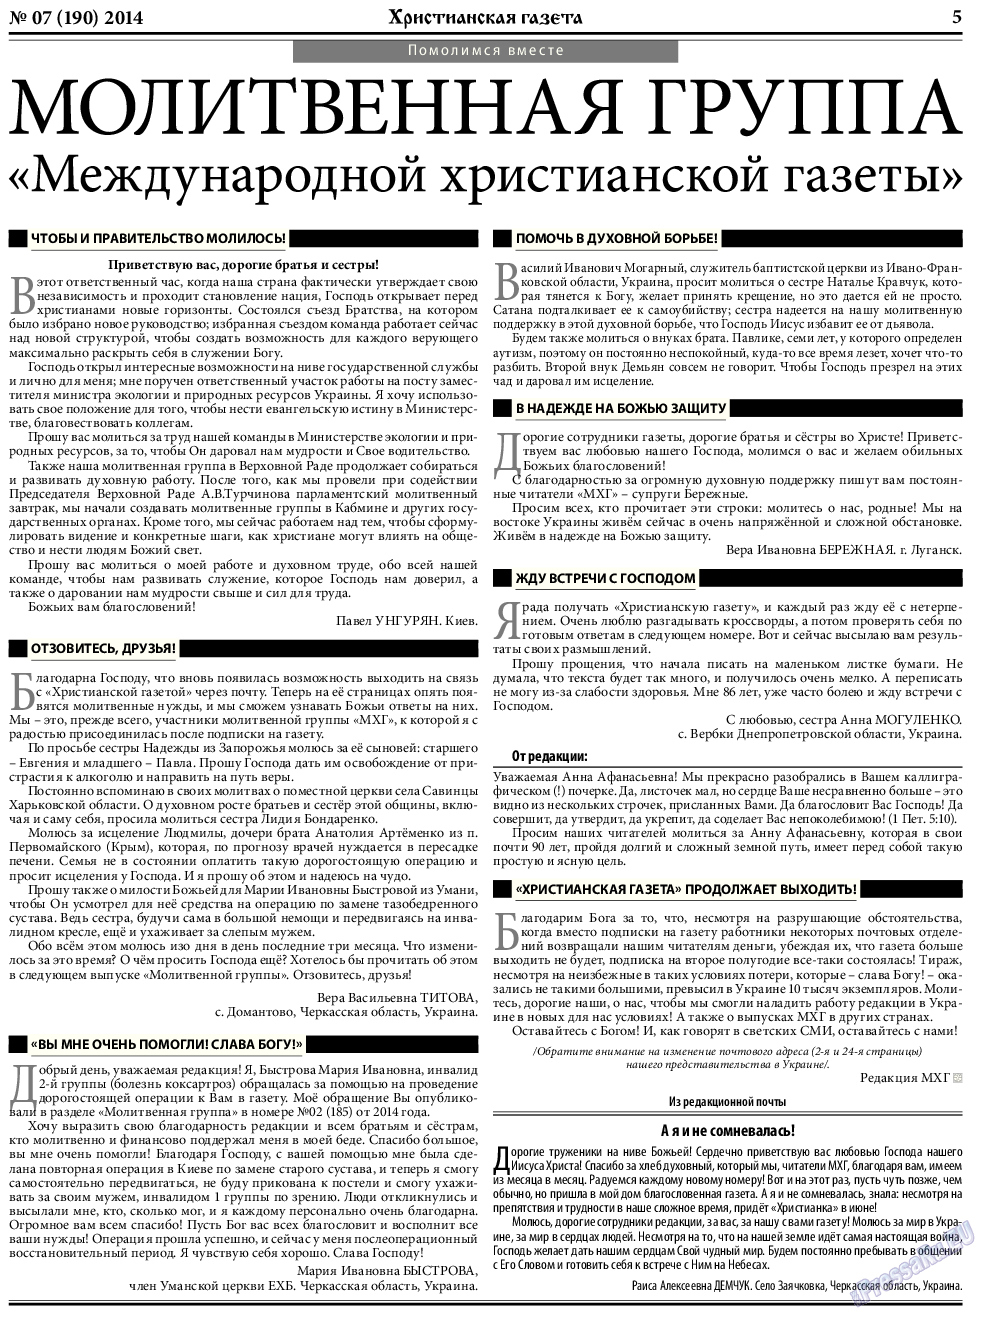 Христианская газета, газета. 2014 №7 стр.5